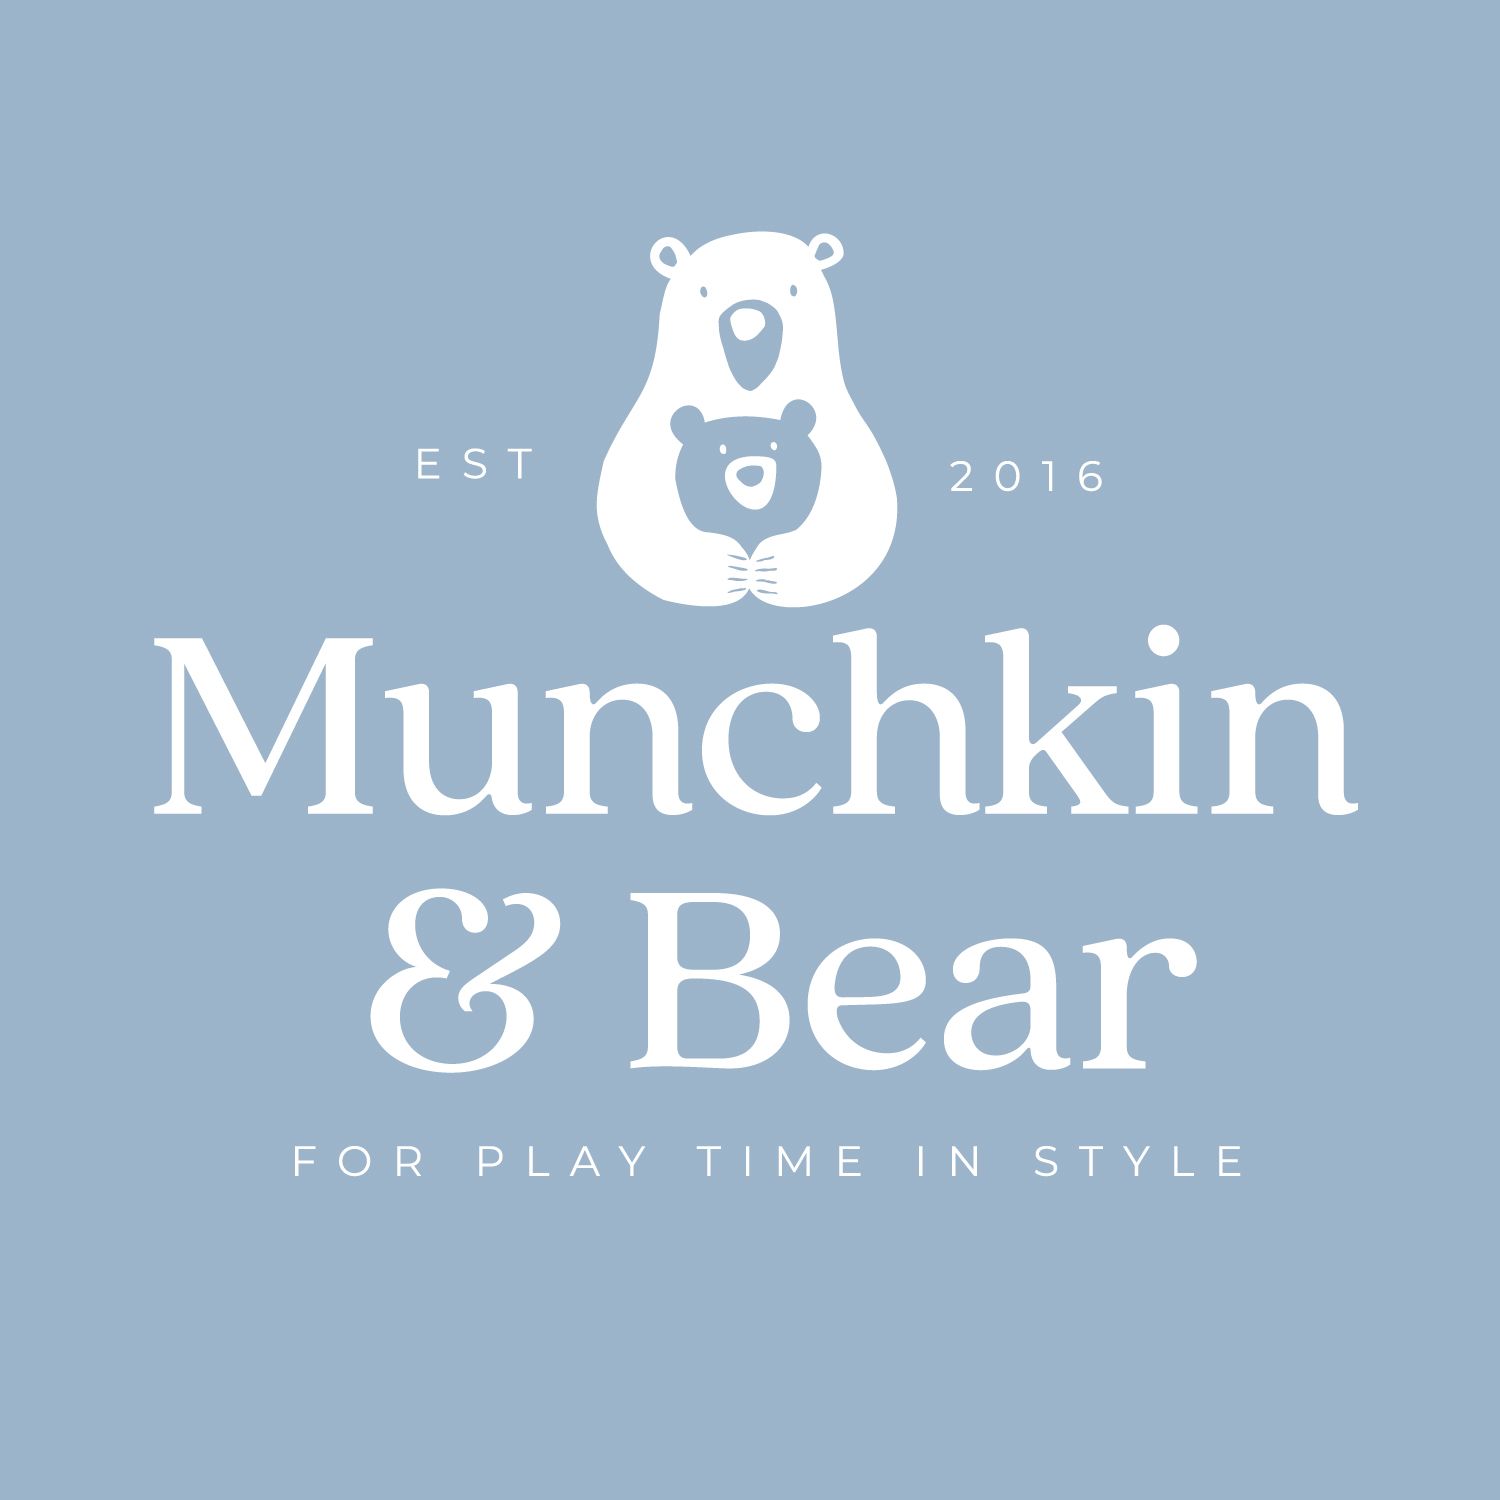 Munchkin & Bear Limited